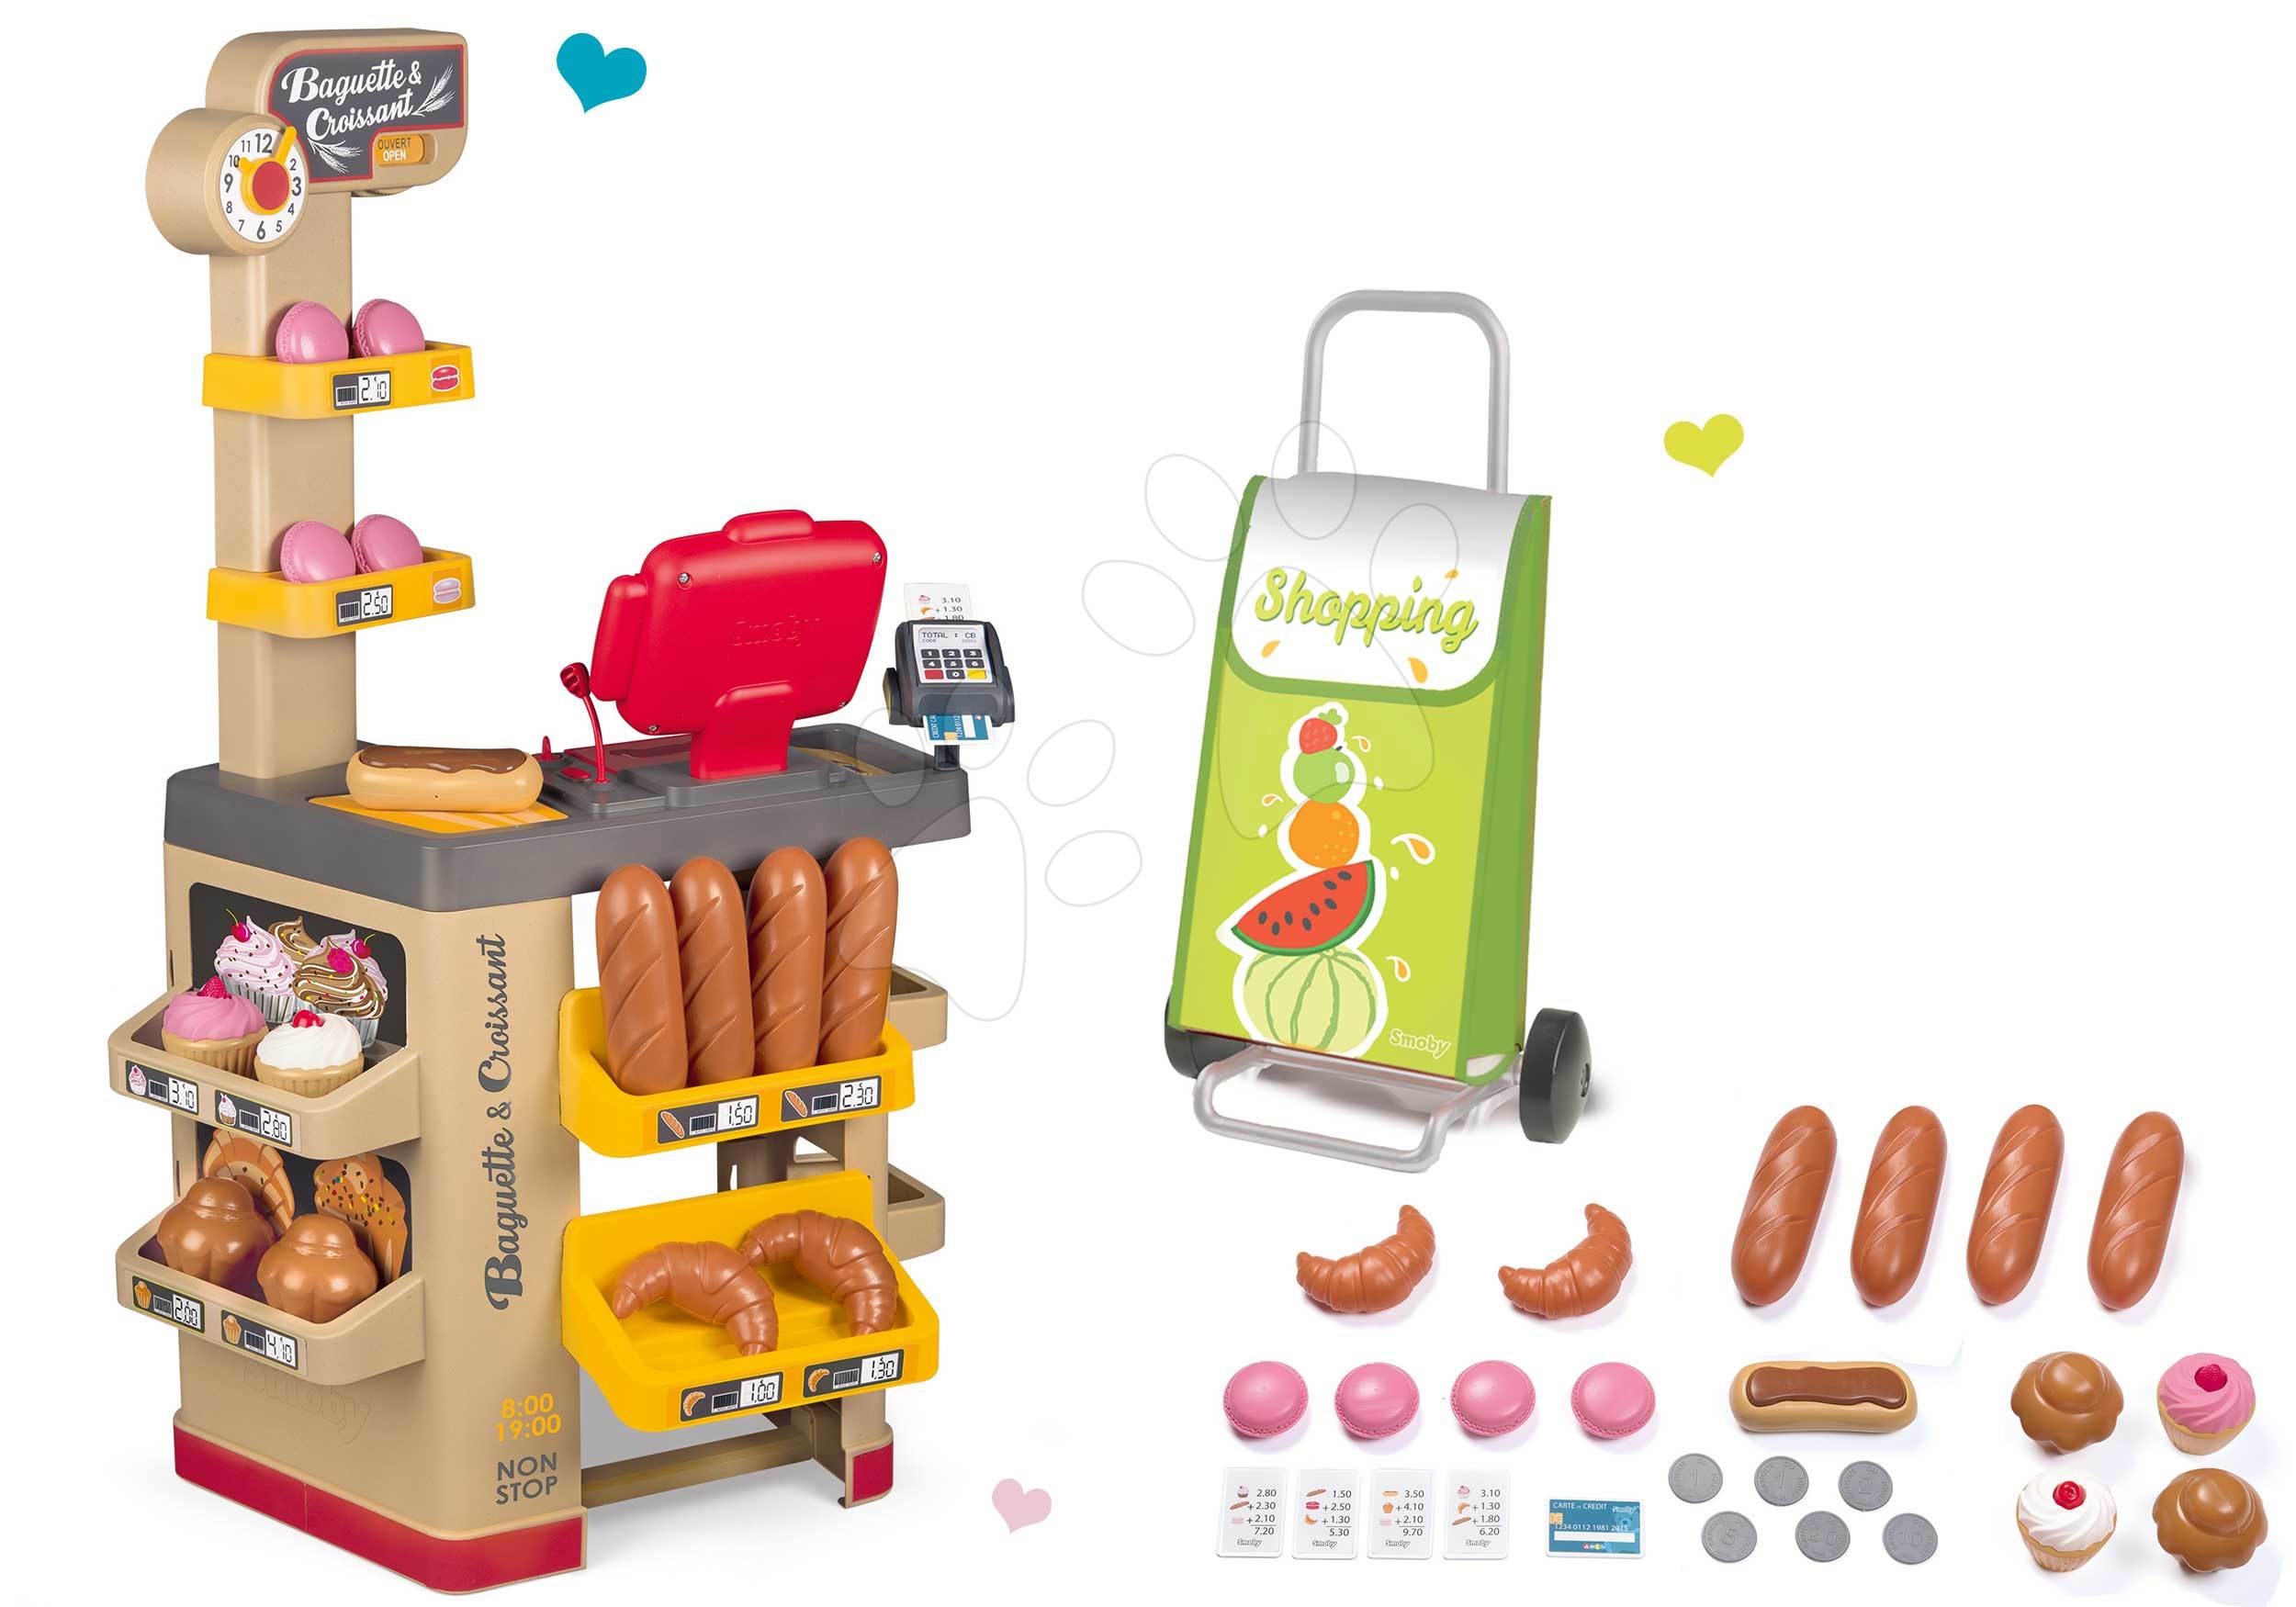 Obchody pro děti - Set pekárna s koláči Baguette&Croissant Bakery Smoby s elektronickou pokladnou a nákupní vozík na kolečkách